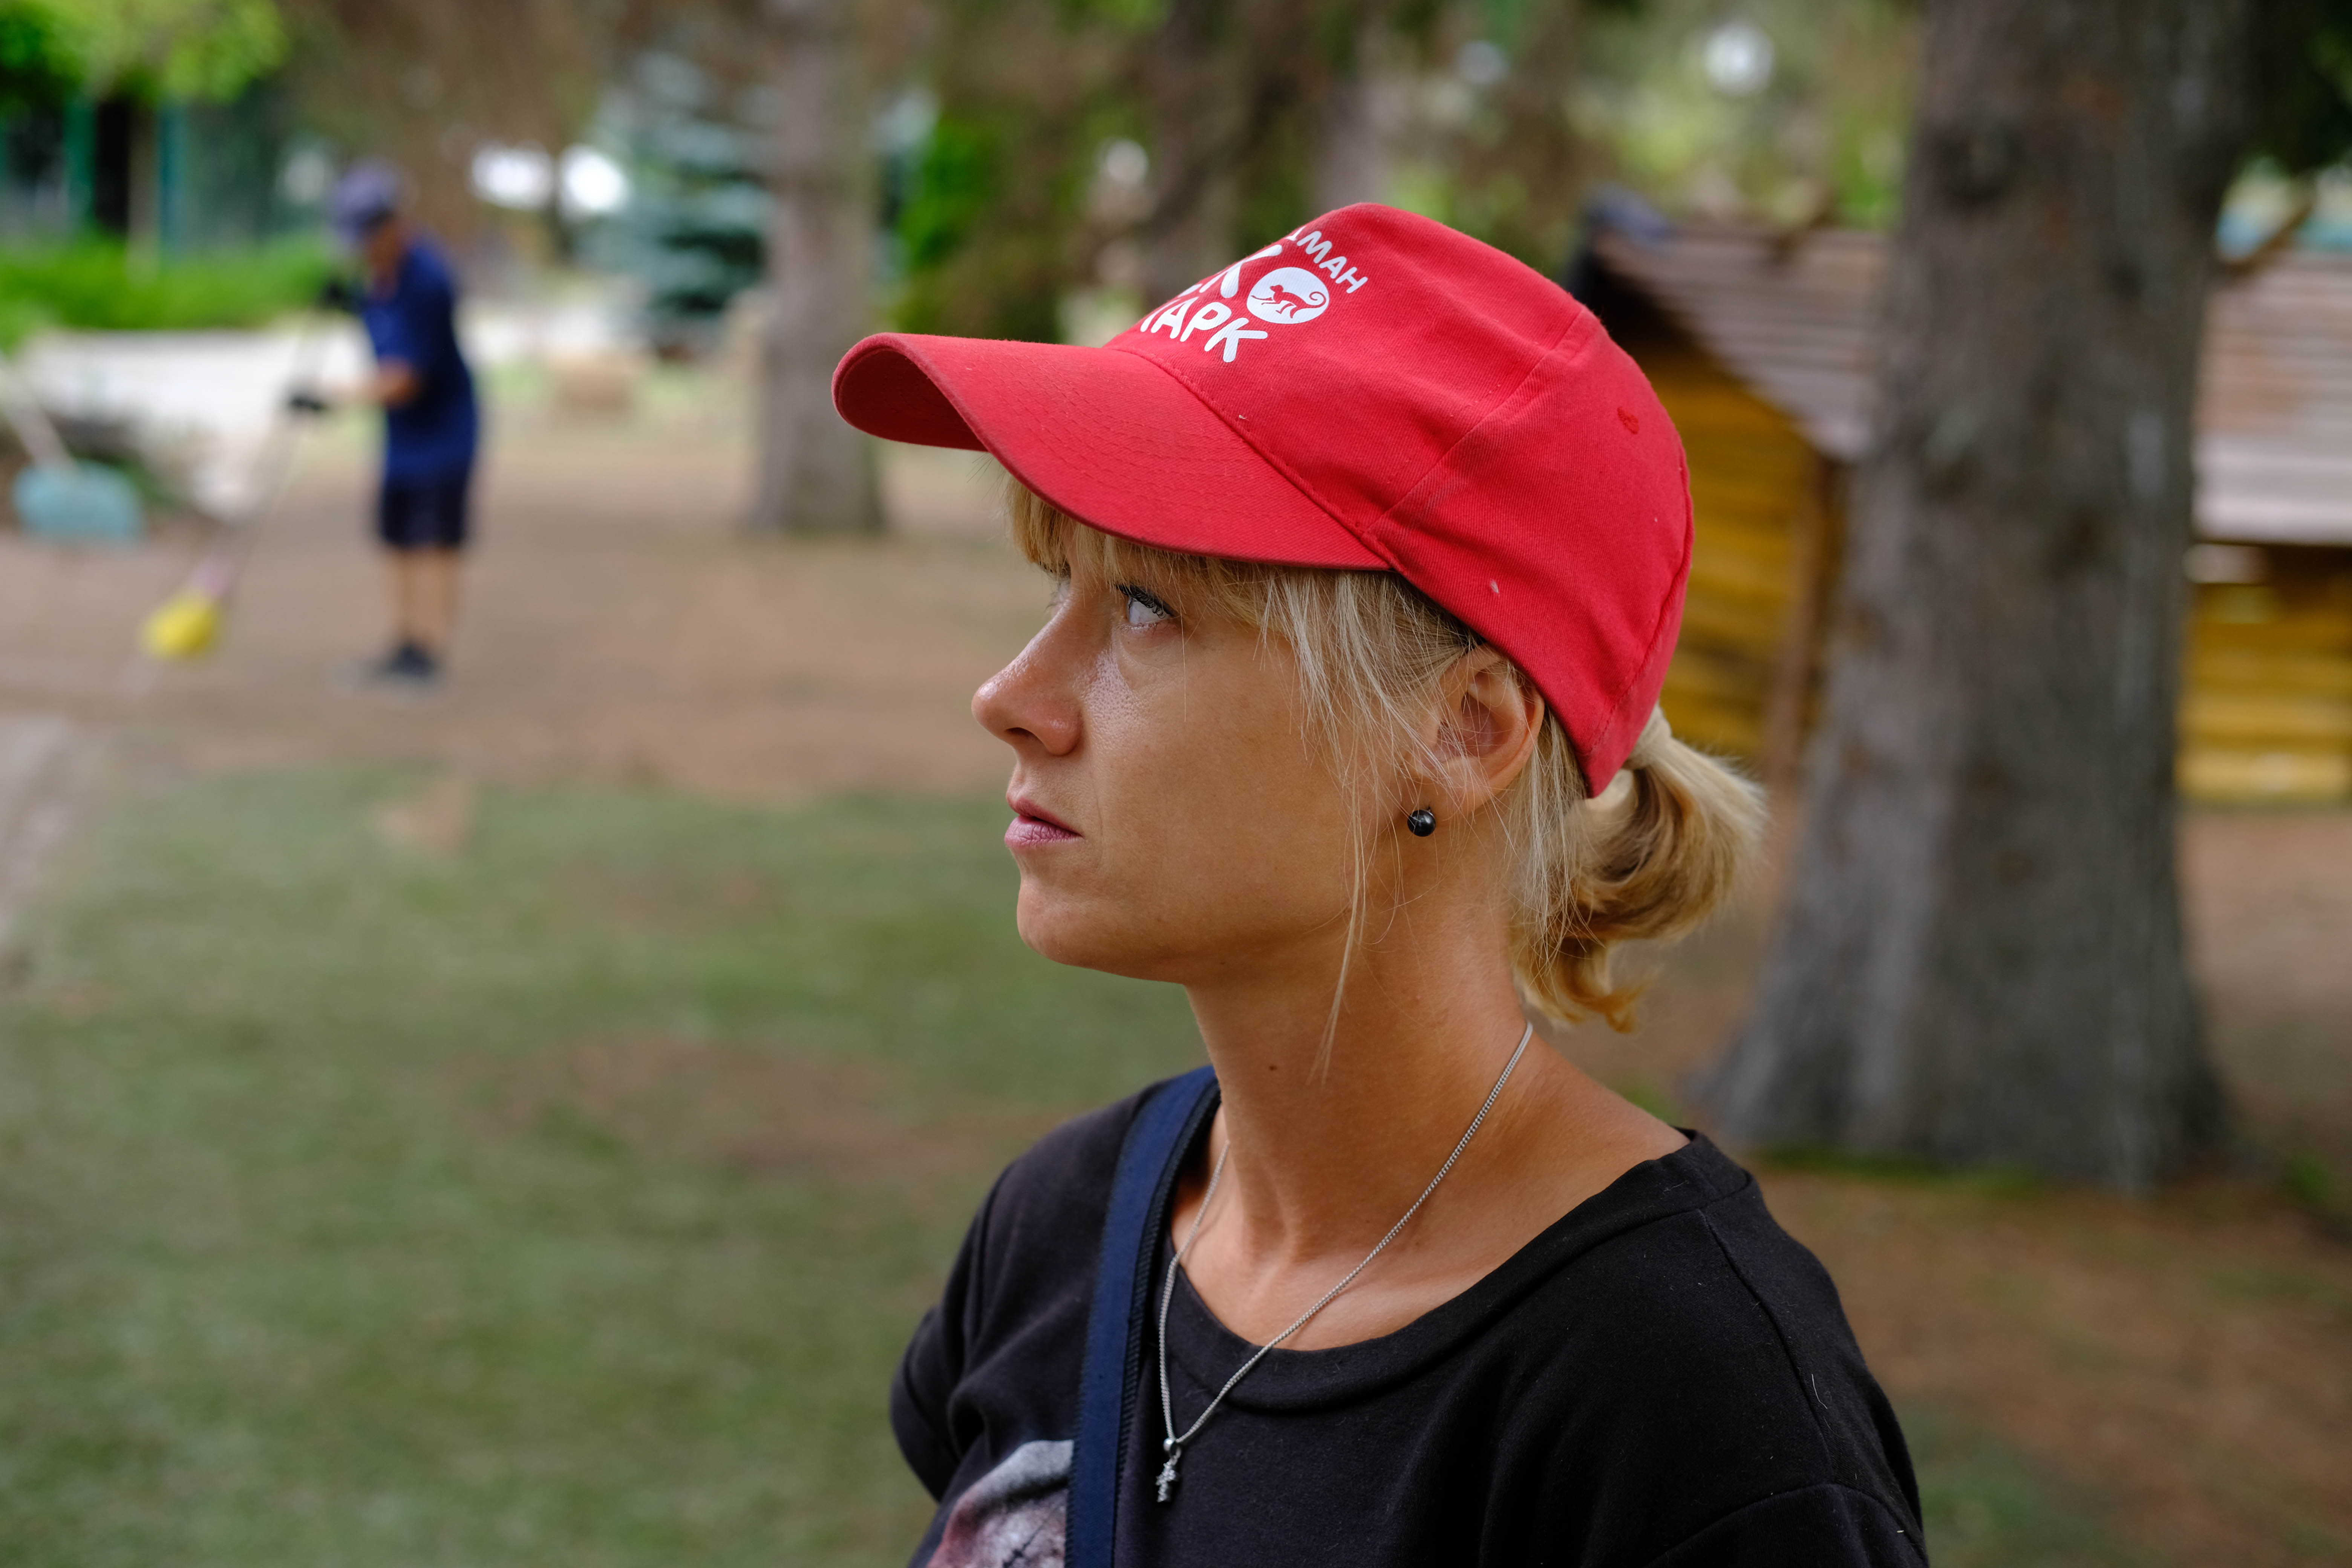 Аліна Манжос-Кирилівська стала волонтеркою екопарку в 2013 році, згодом офіційно працевлаштувалася. Останні два роки була у 